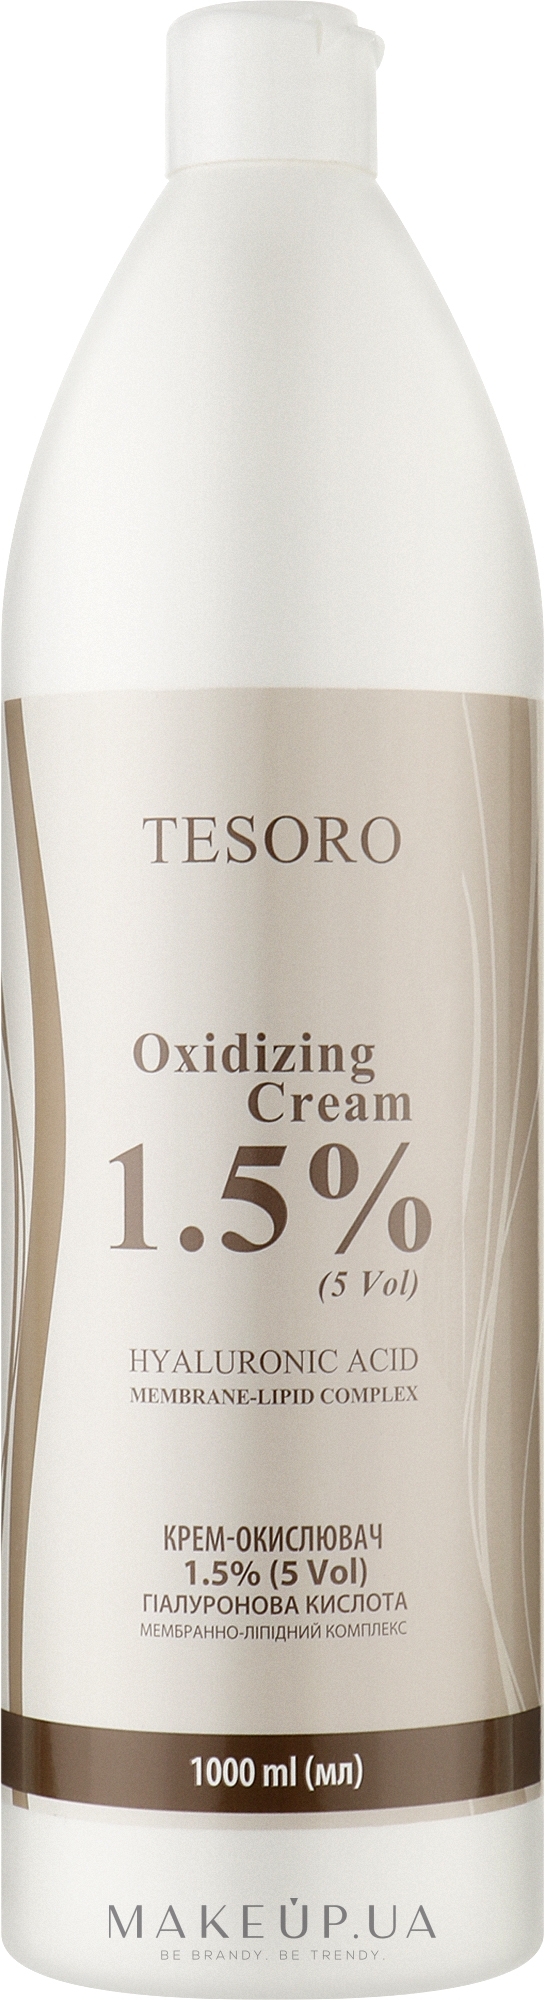 Крем-окислитель 1,5% - Moli Cosmetics Tesoro Oxidizing Cream 5 Vol — фото 1000ml